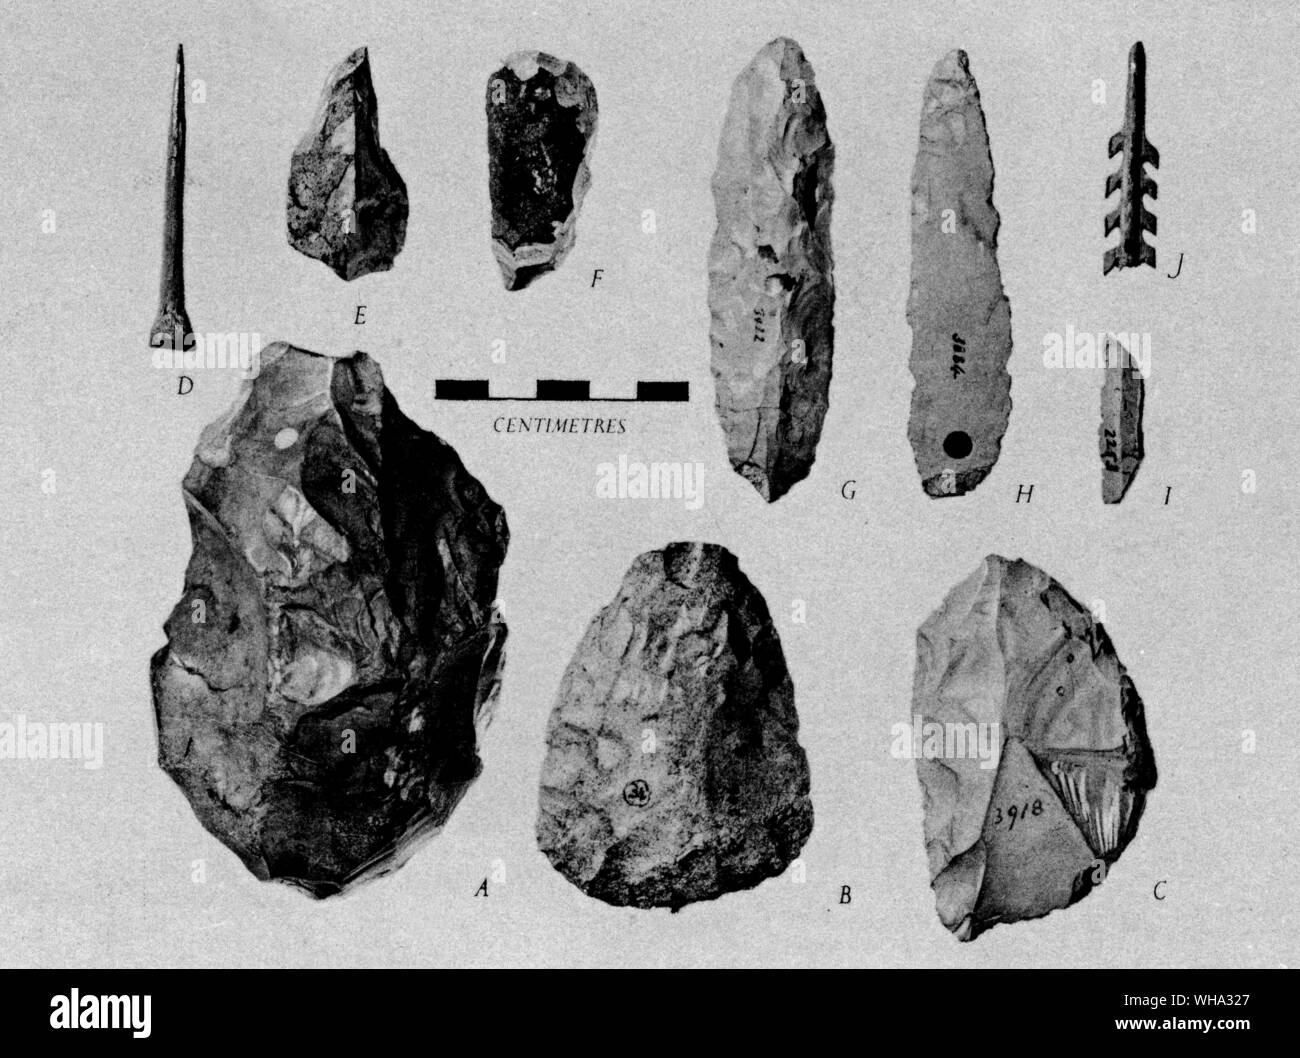 Fossile Mann: Altsteinzeit Artefakte von Kent's Cavern, Torquay, Devon. A-Unterer Altsteinzeit; B & C-Mittelpaläolithikum; D-J-Jungpaläolithikum. Stockfoto